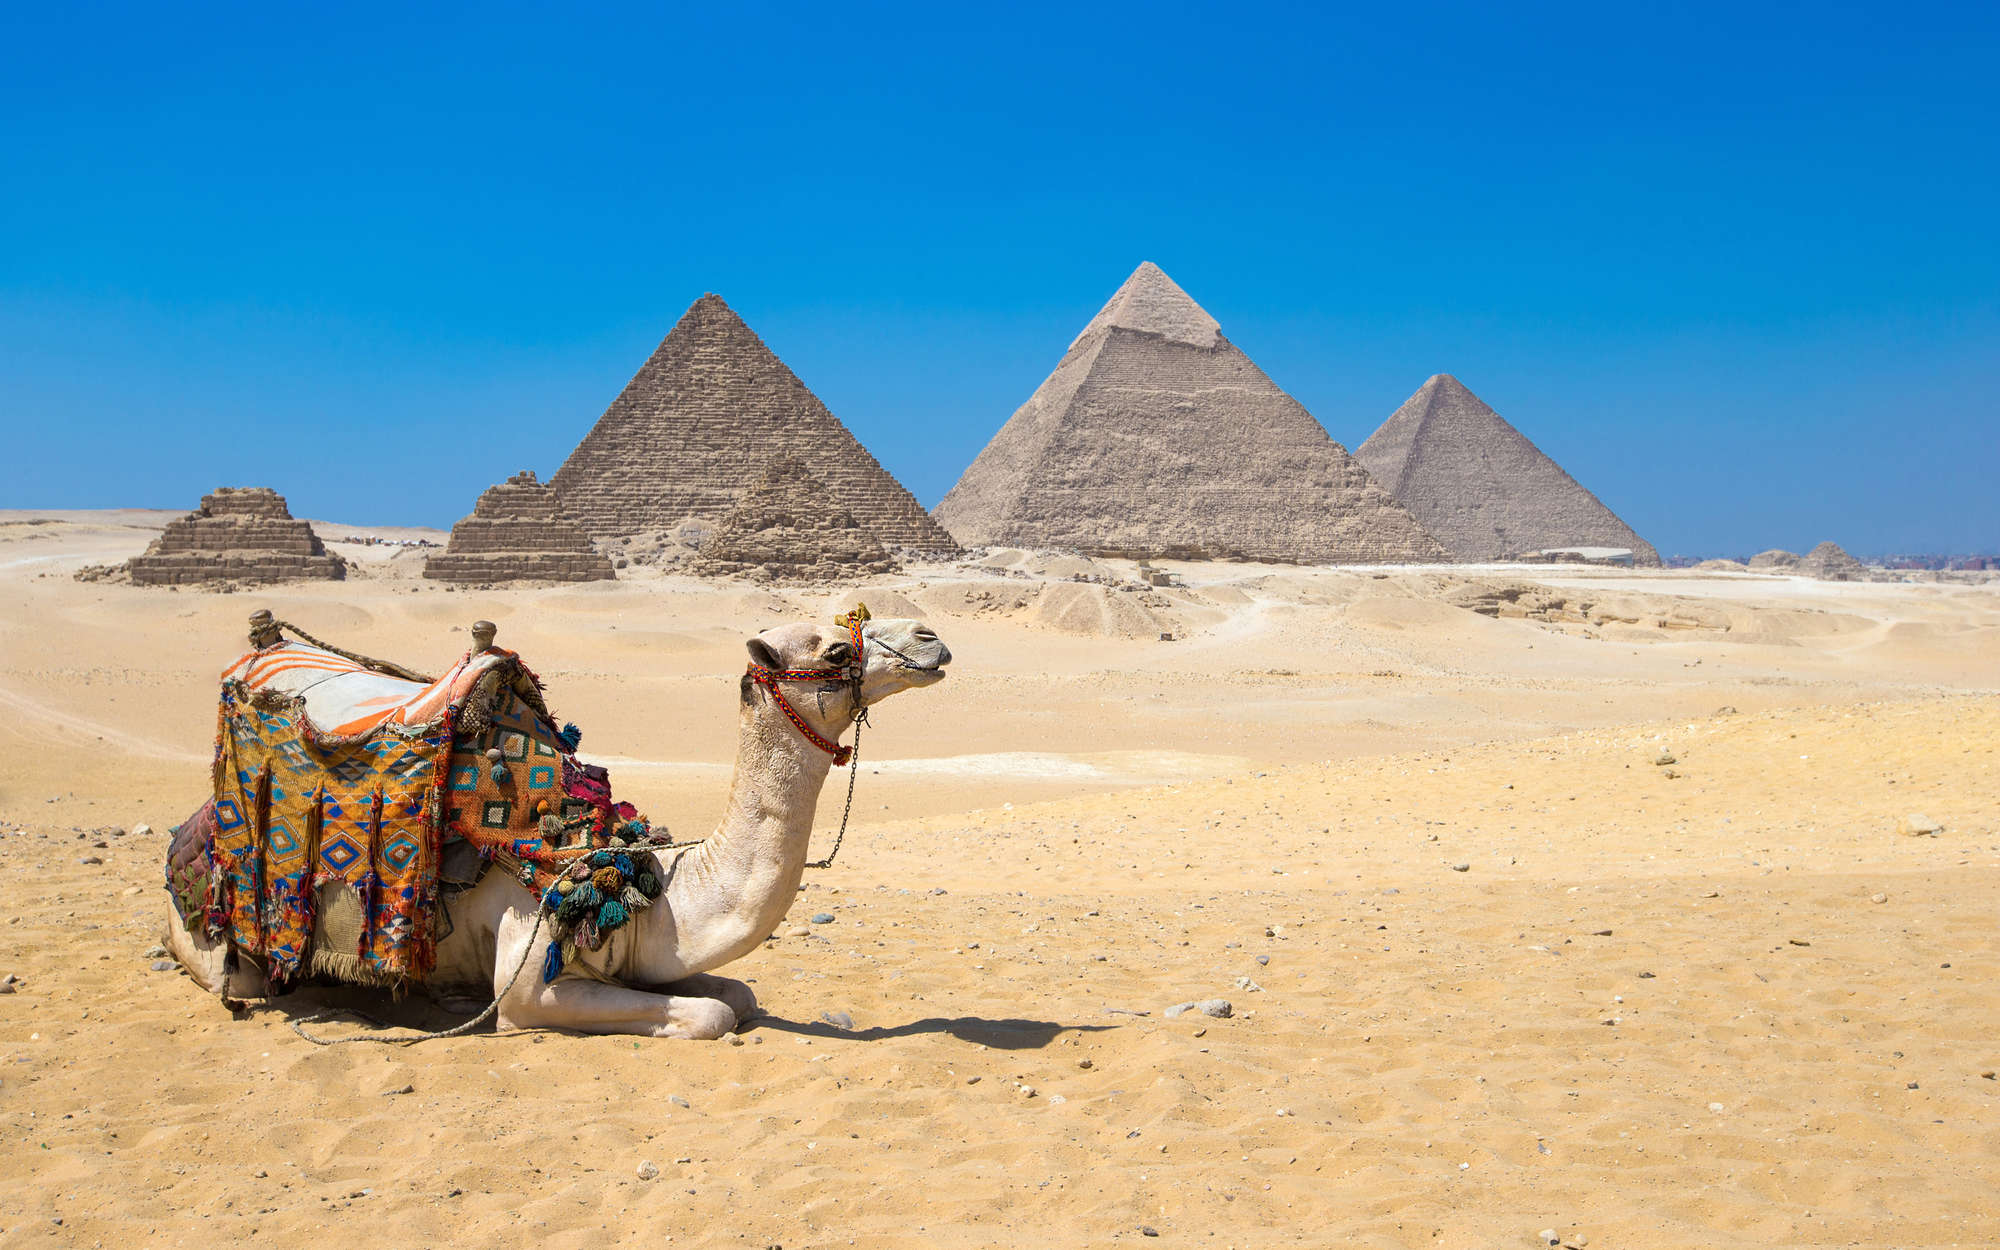             Pyramids of Giza Wallpaper with Camel - Premium Smooth Non-woven
        